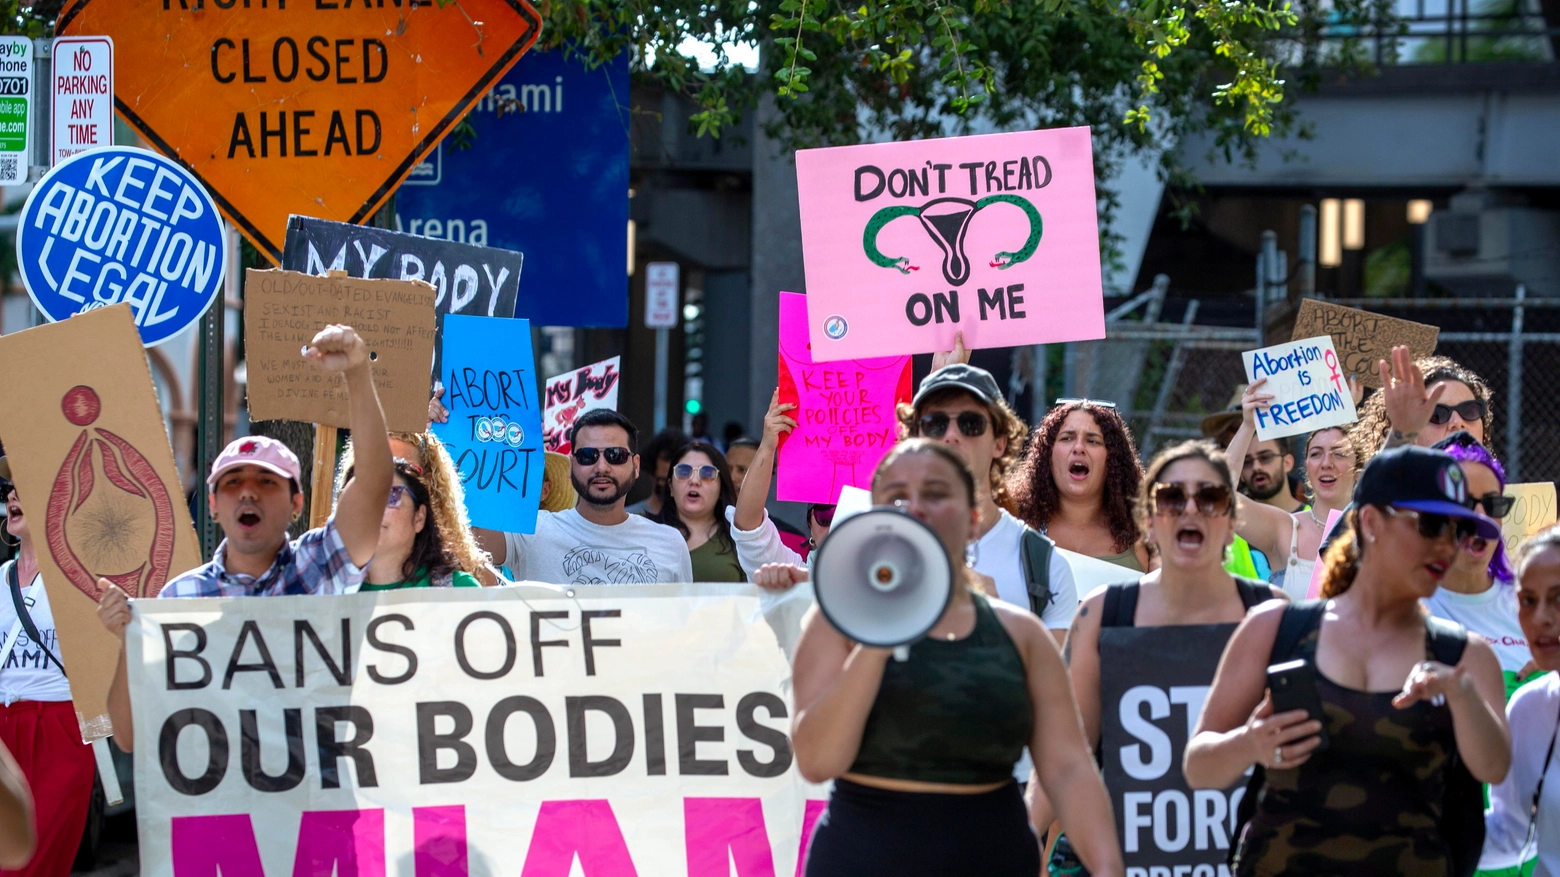 Proteste pro aborto negli Stati Uniti (Ansa)